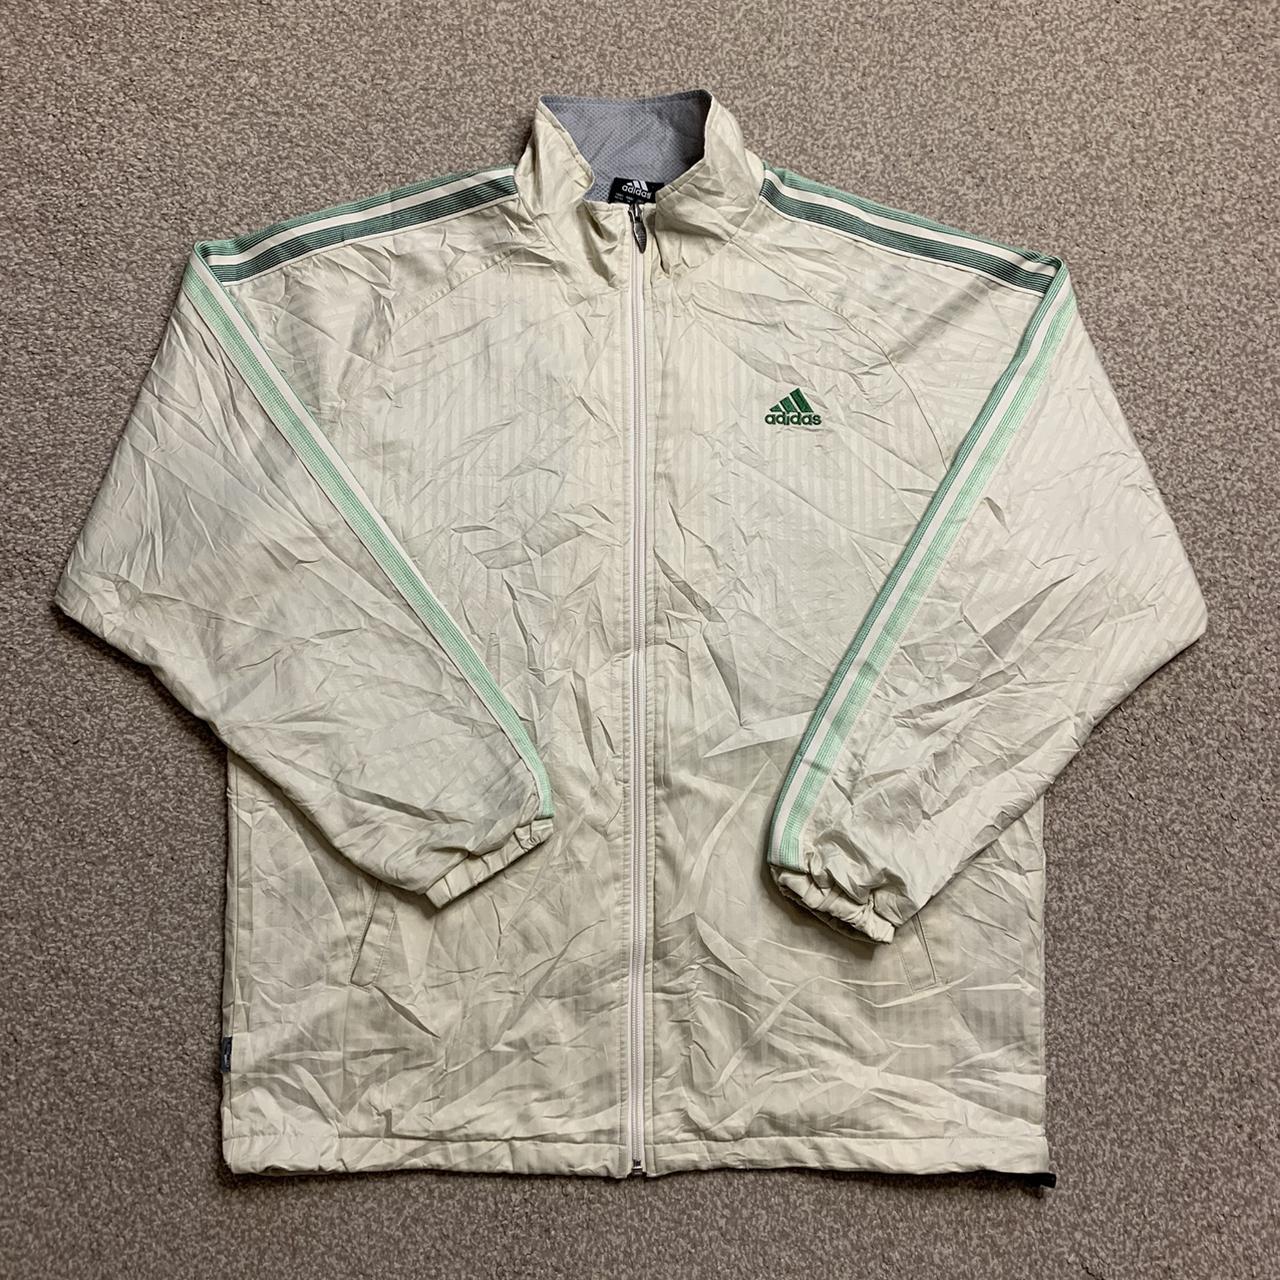 Adidas Windbreaker Jacket Vintage Tracksuit Jacket... - Depop